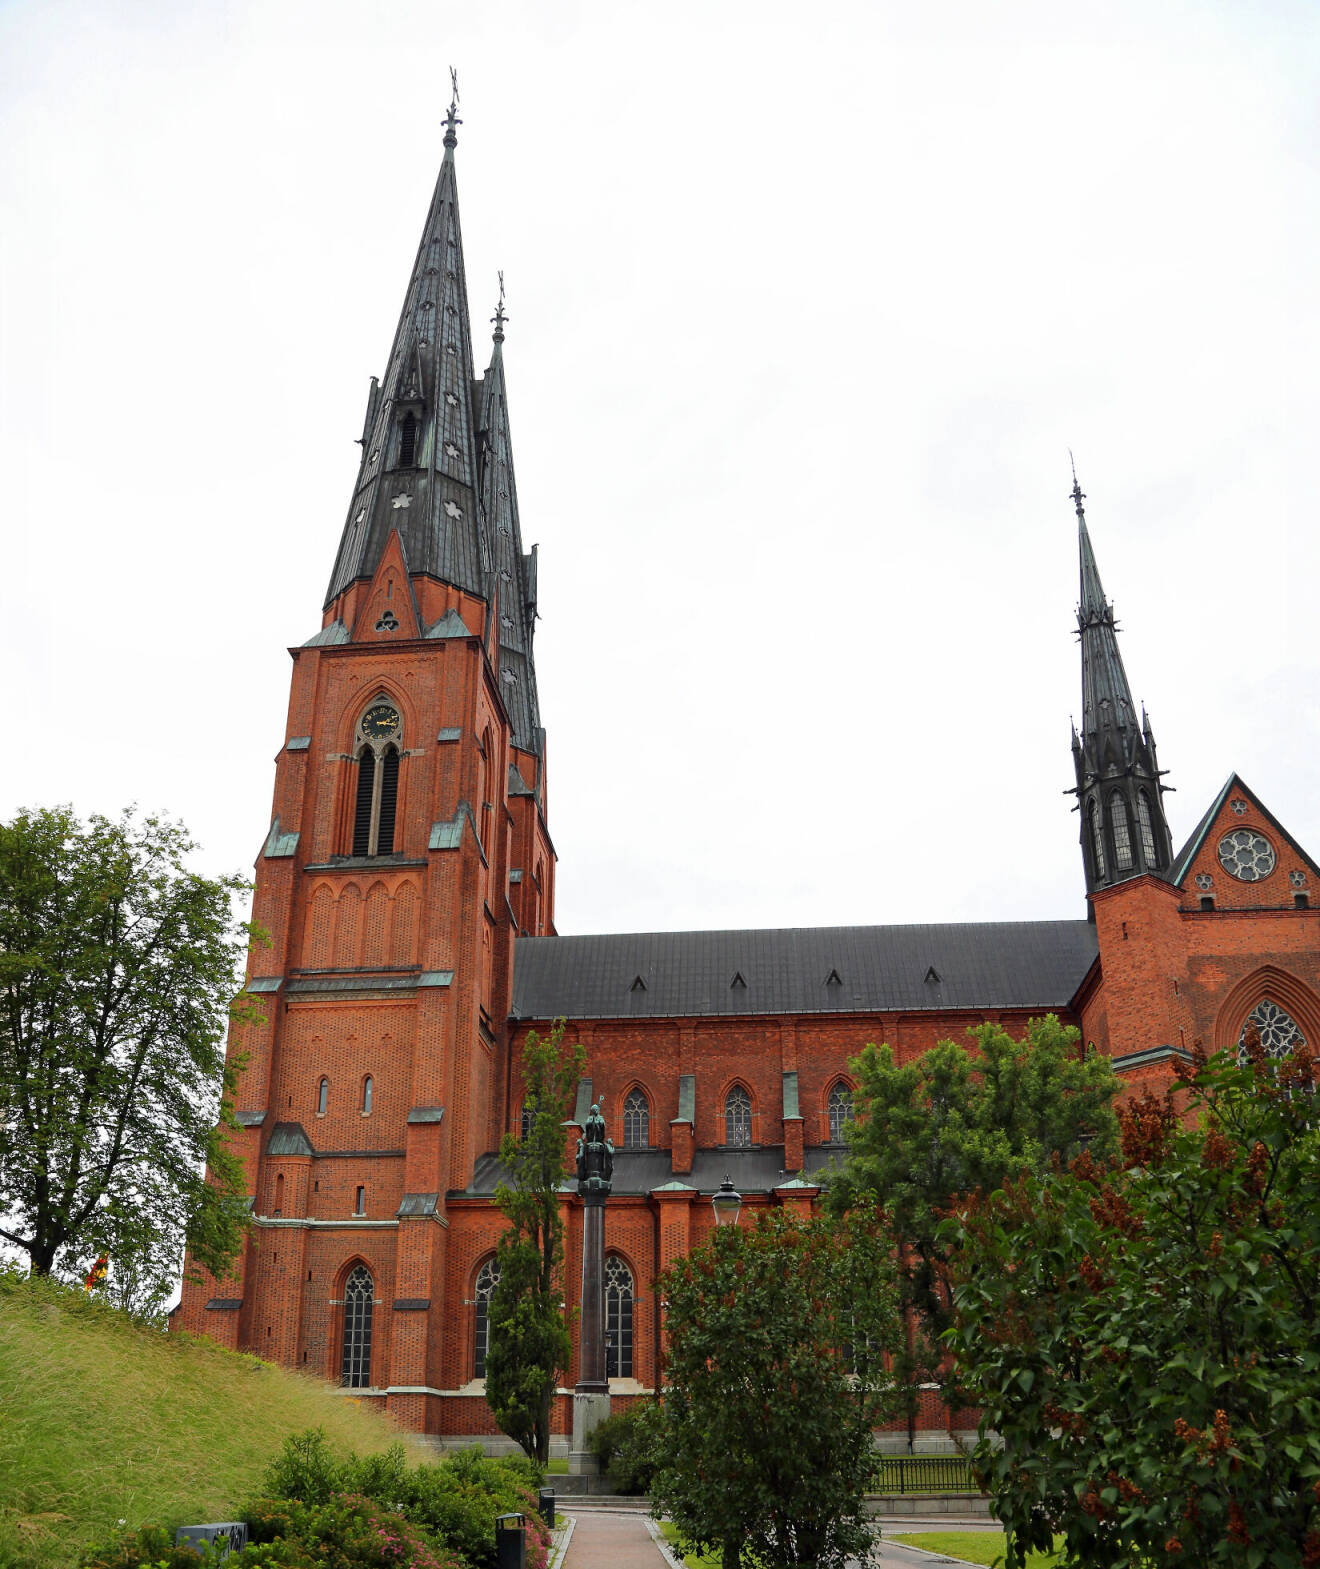 Uppsala domkyrka.